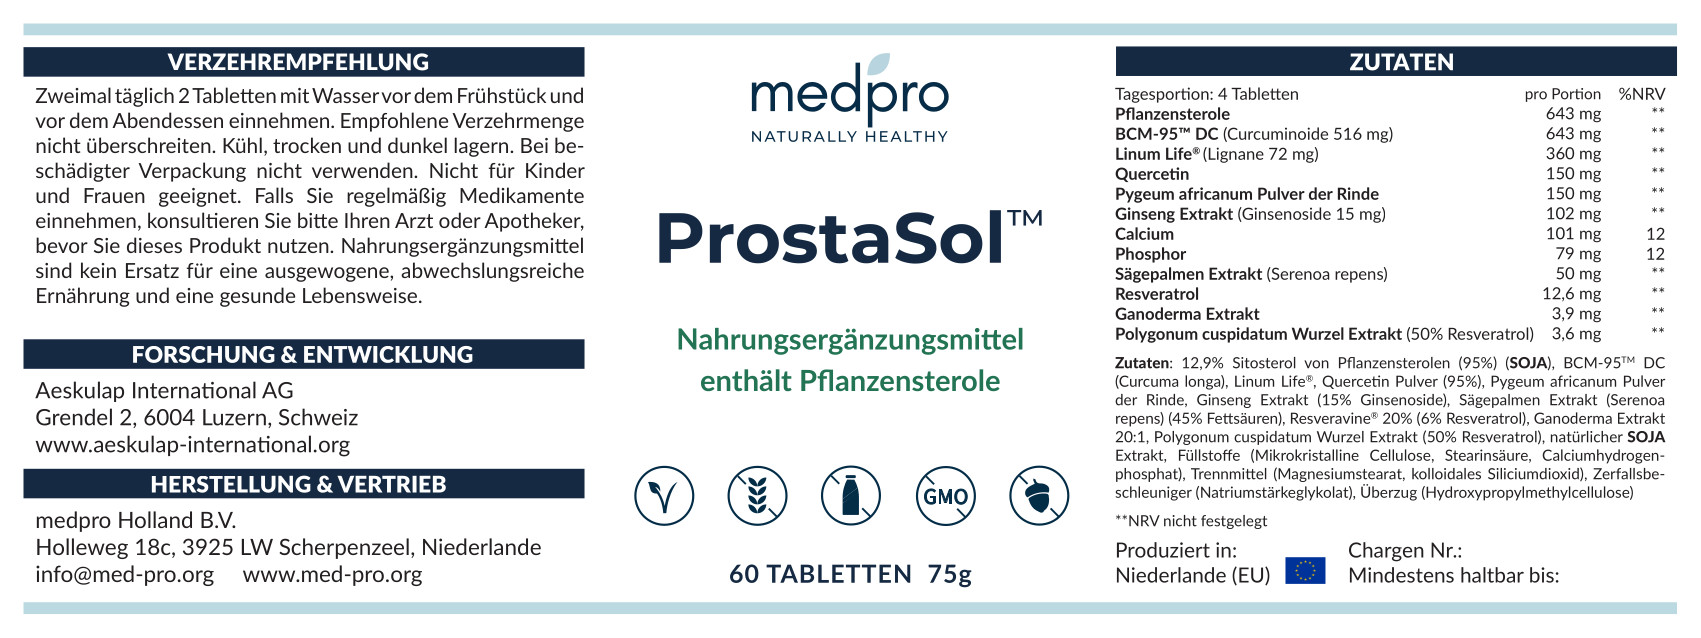 Prostasol_DE